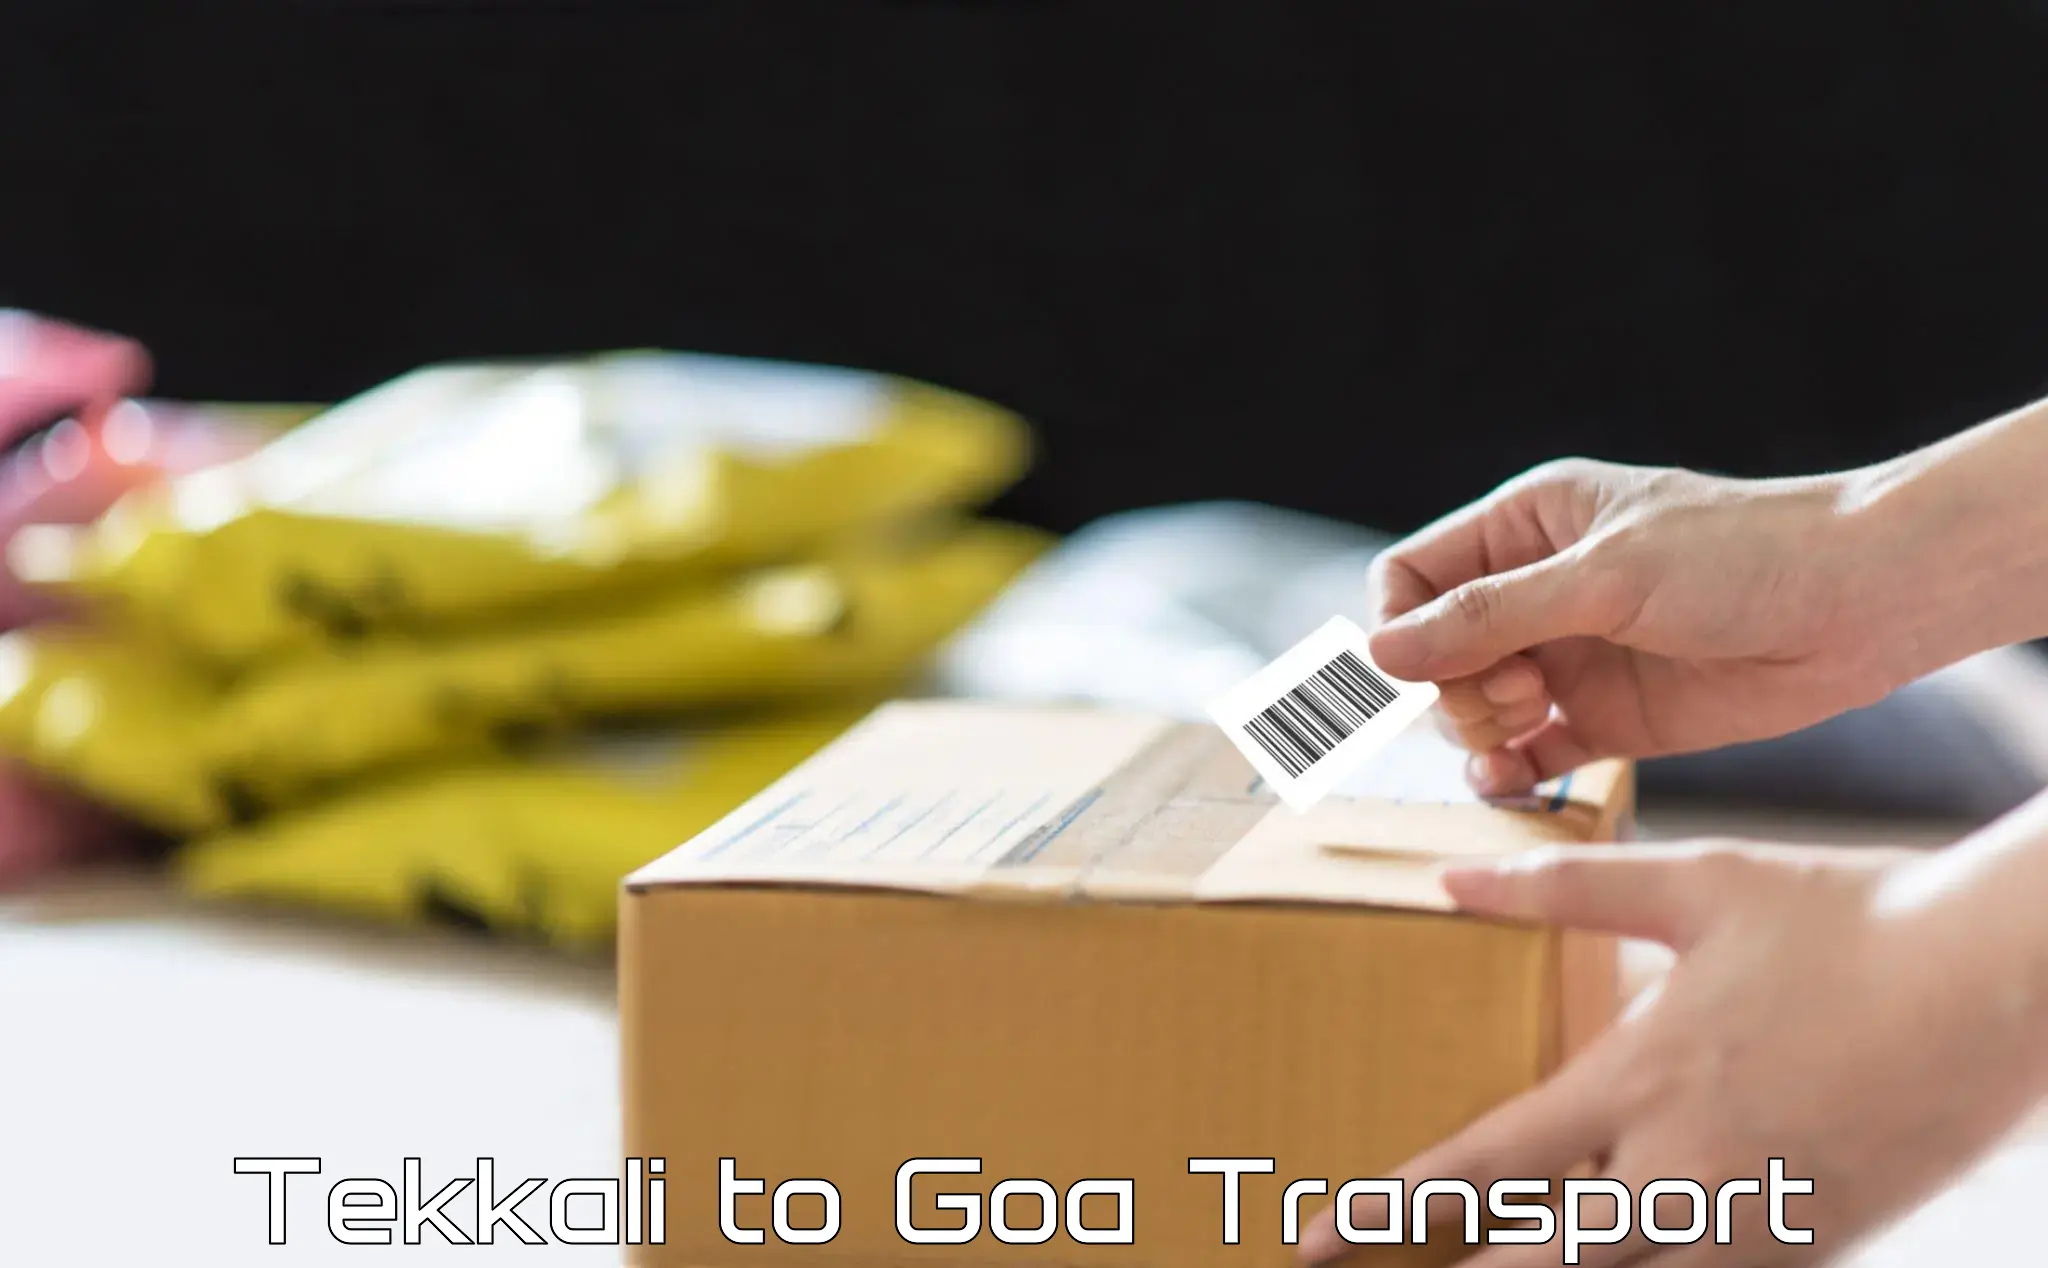 Commercial transport service Tekkali to Vasco da Gama